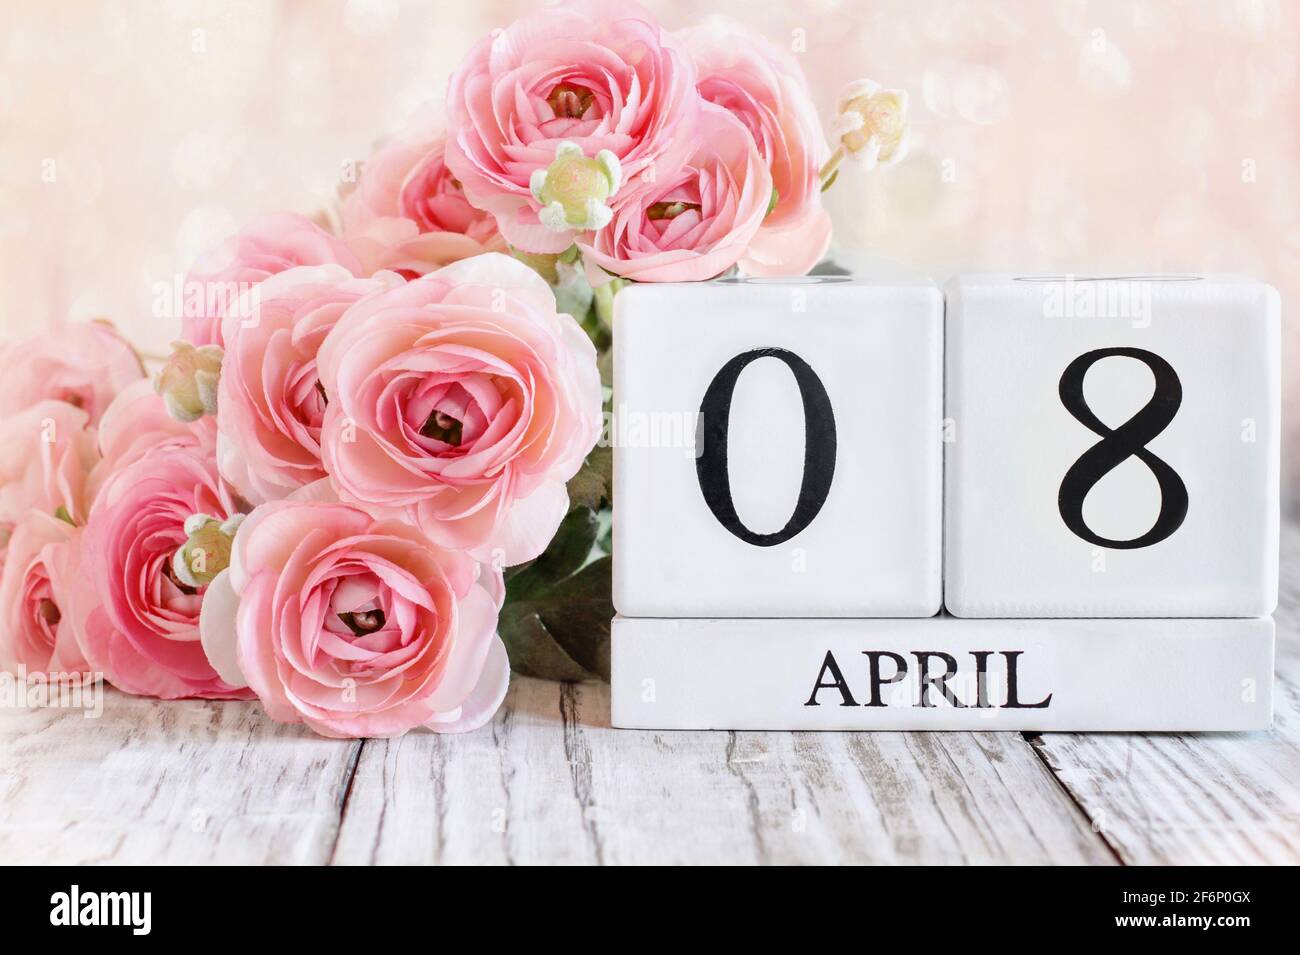 Blocs de calendrier en bois blanc avec la date du 8 avril. Mise au point sélective avec arrière-plan flou. Banque D'Images